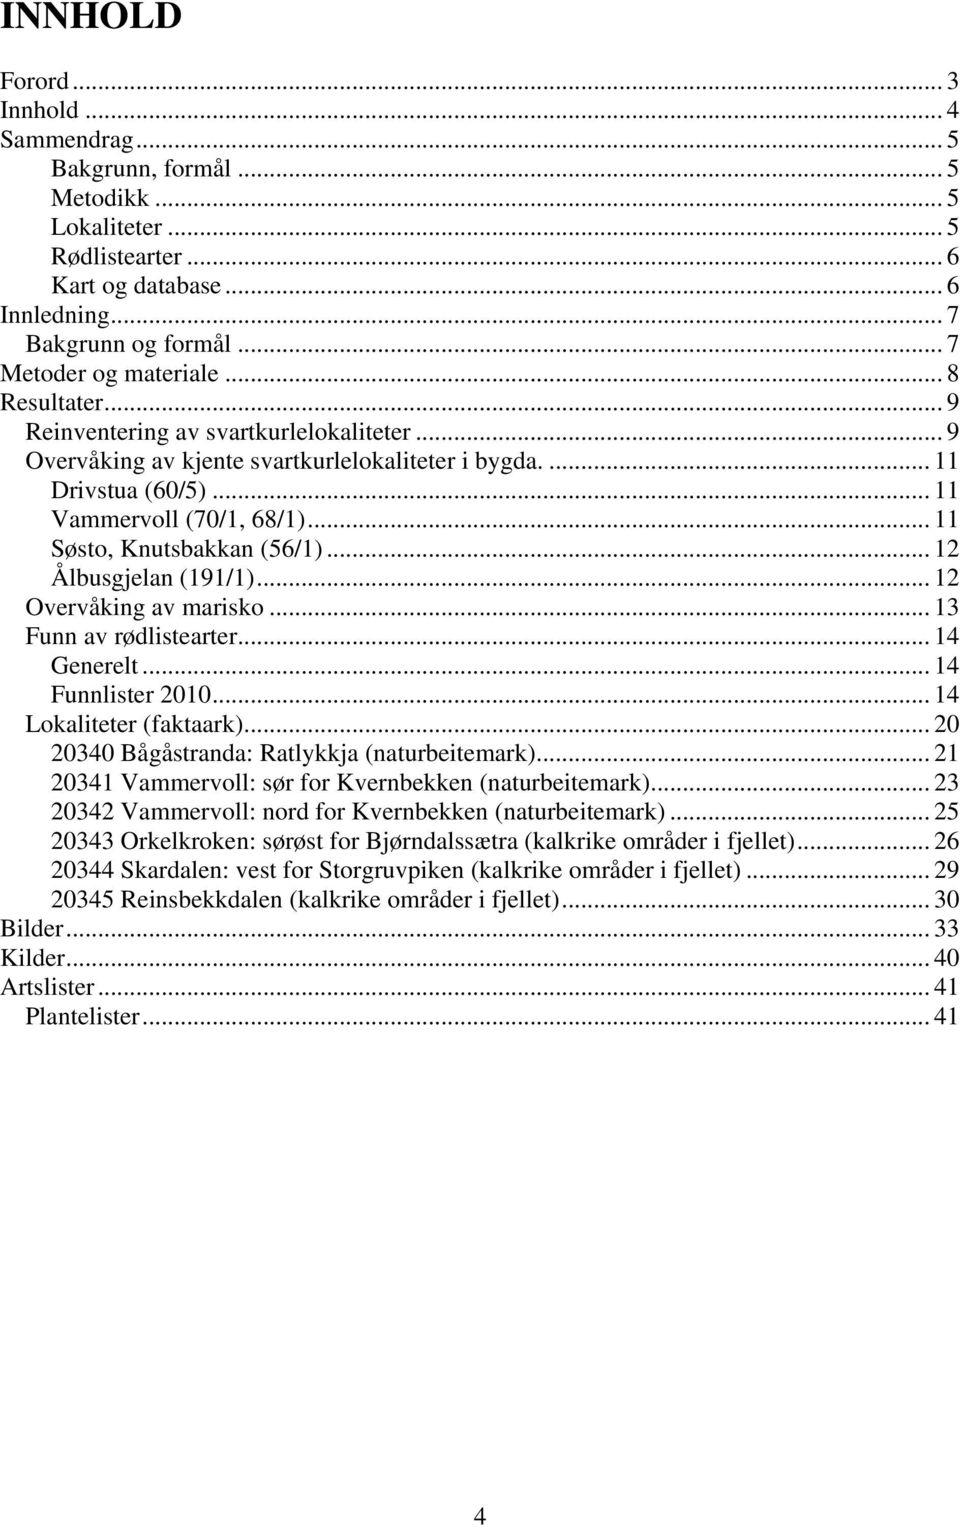 .. 11 Søsto, Knutsbakkan (56/1)... 12 Ålbusgjelan (191/1)... 12 Overvåking av marisko... 13 Funn av rødlistearter... 14 Generelt... 14 Funnlister 2010... 14 Lokaliteter (faktaark).